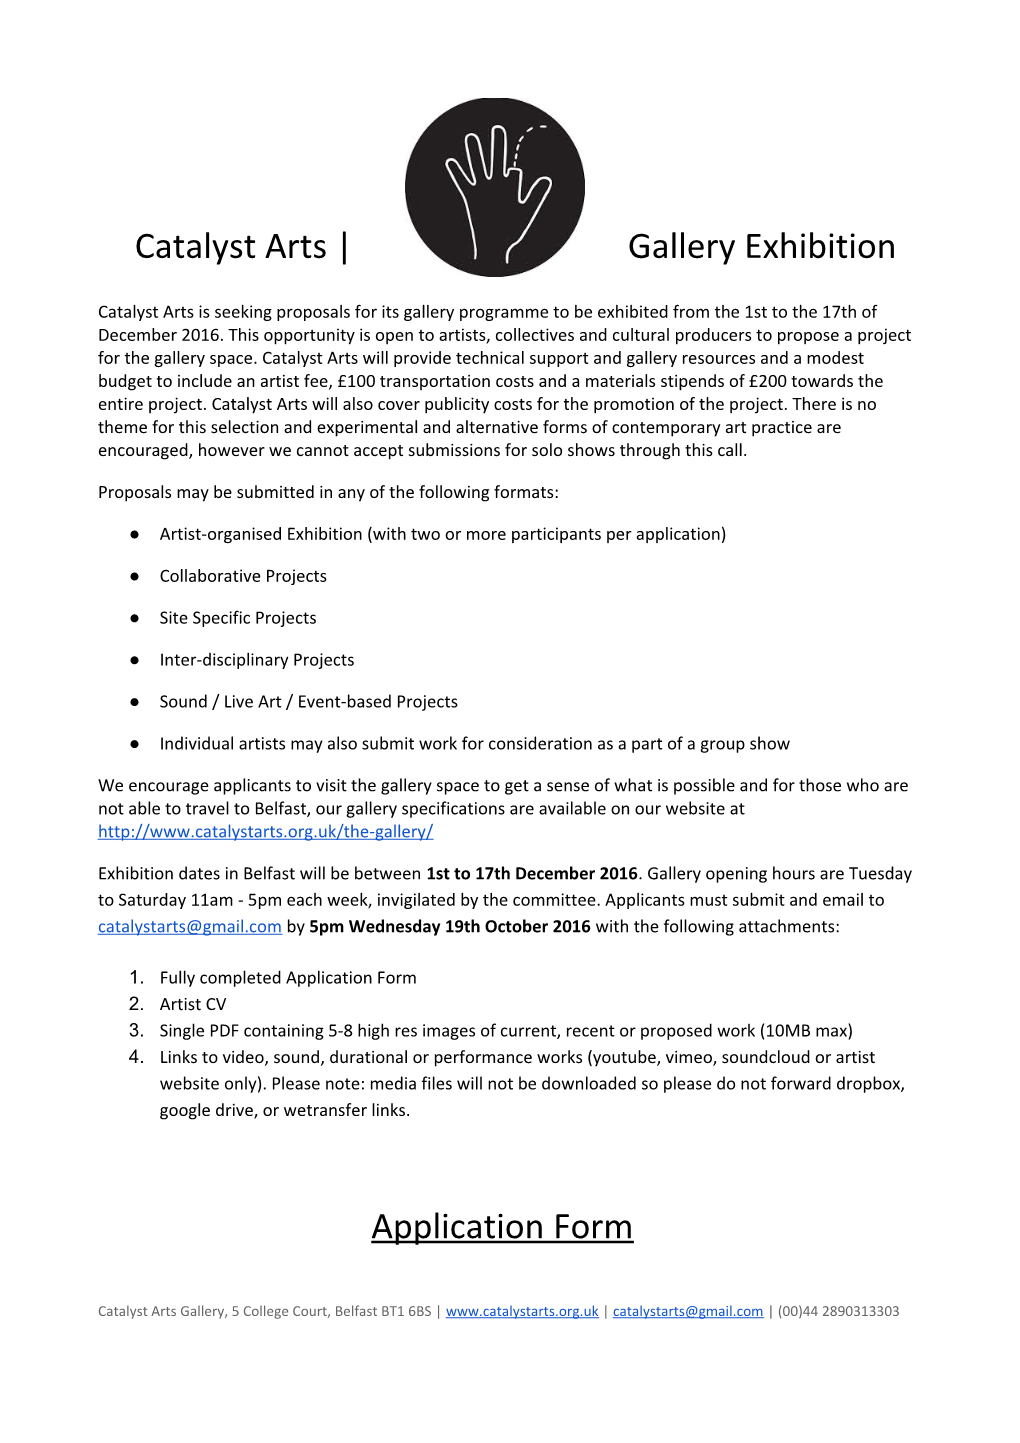 Catalyst Arts Gallery Exhibition